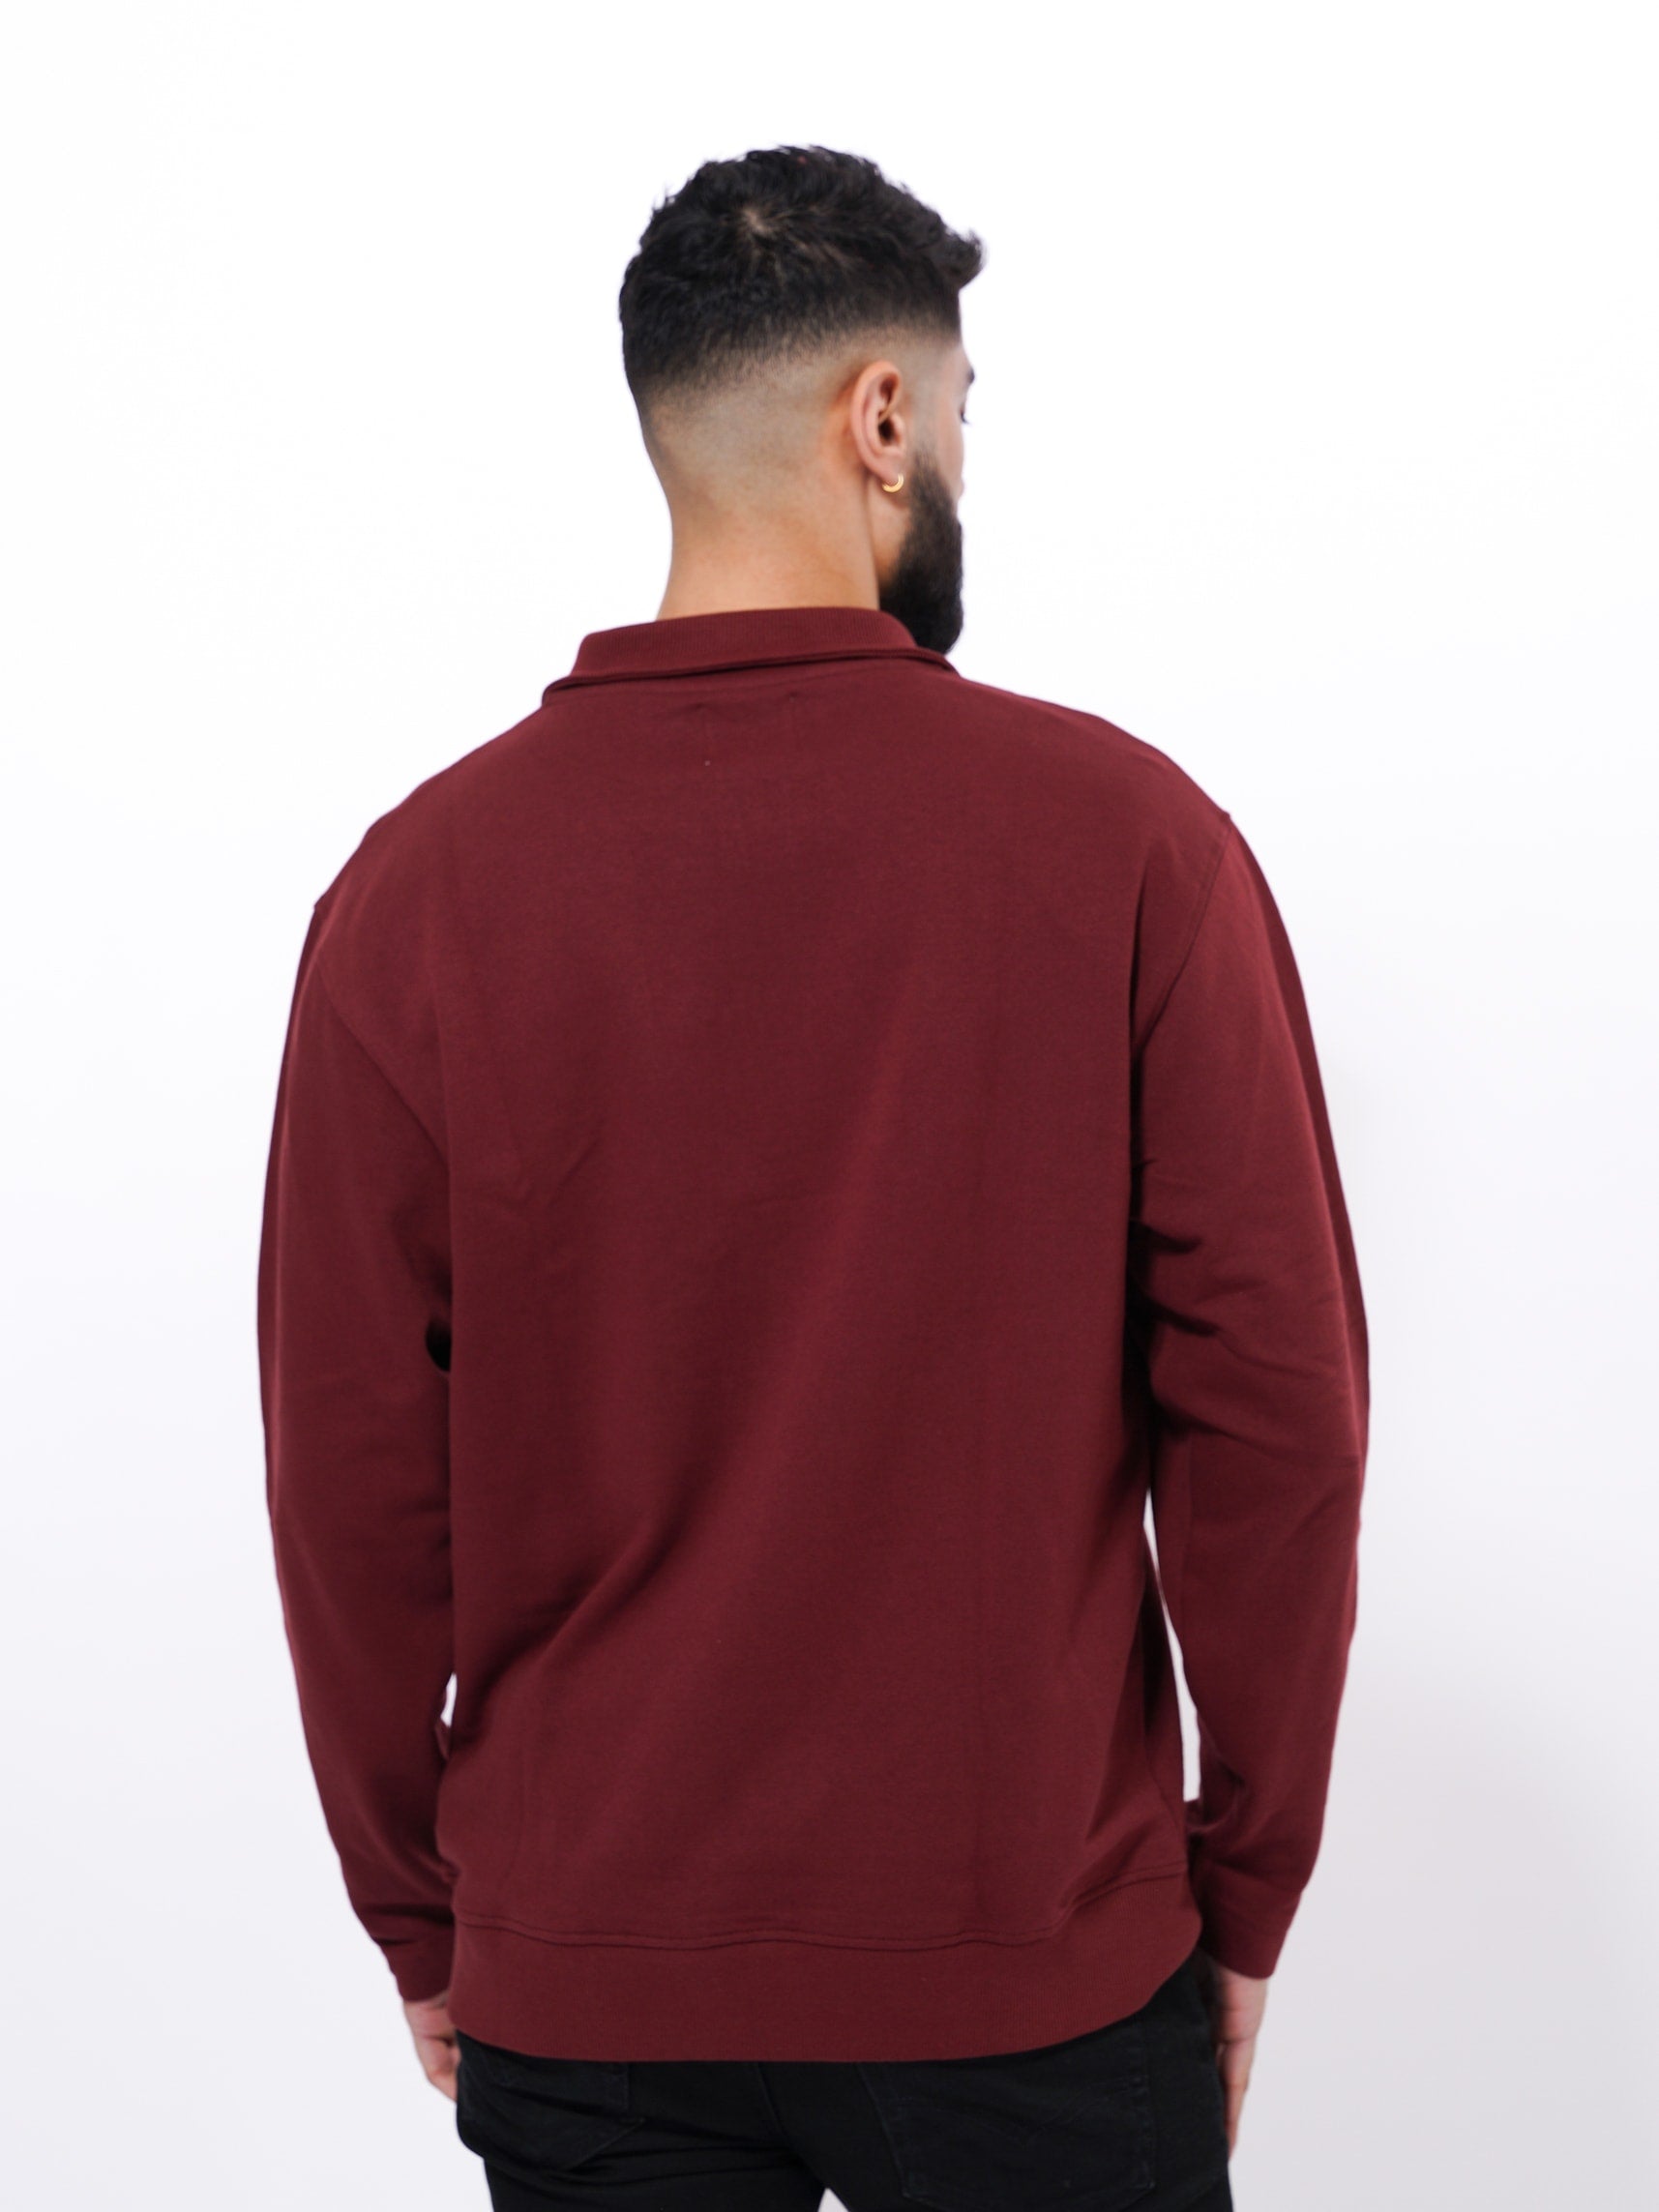 Men's Long Sleeve High Neck Sweatshirt | Wine Color - inteblu